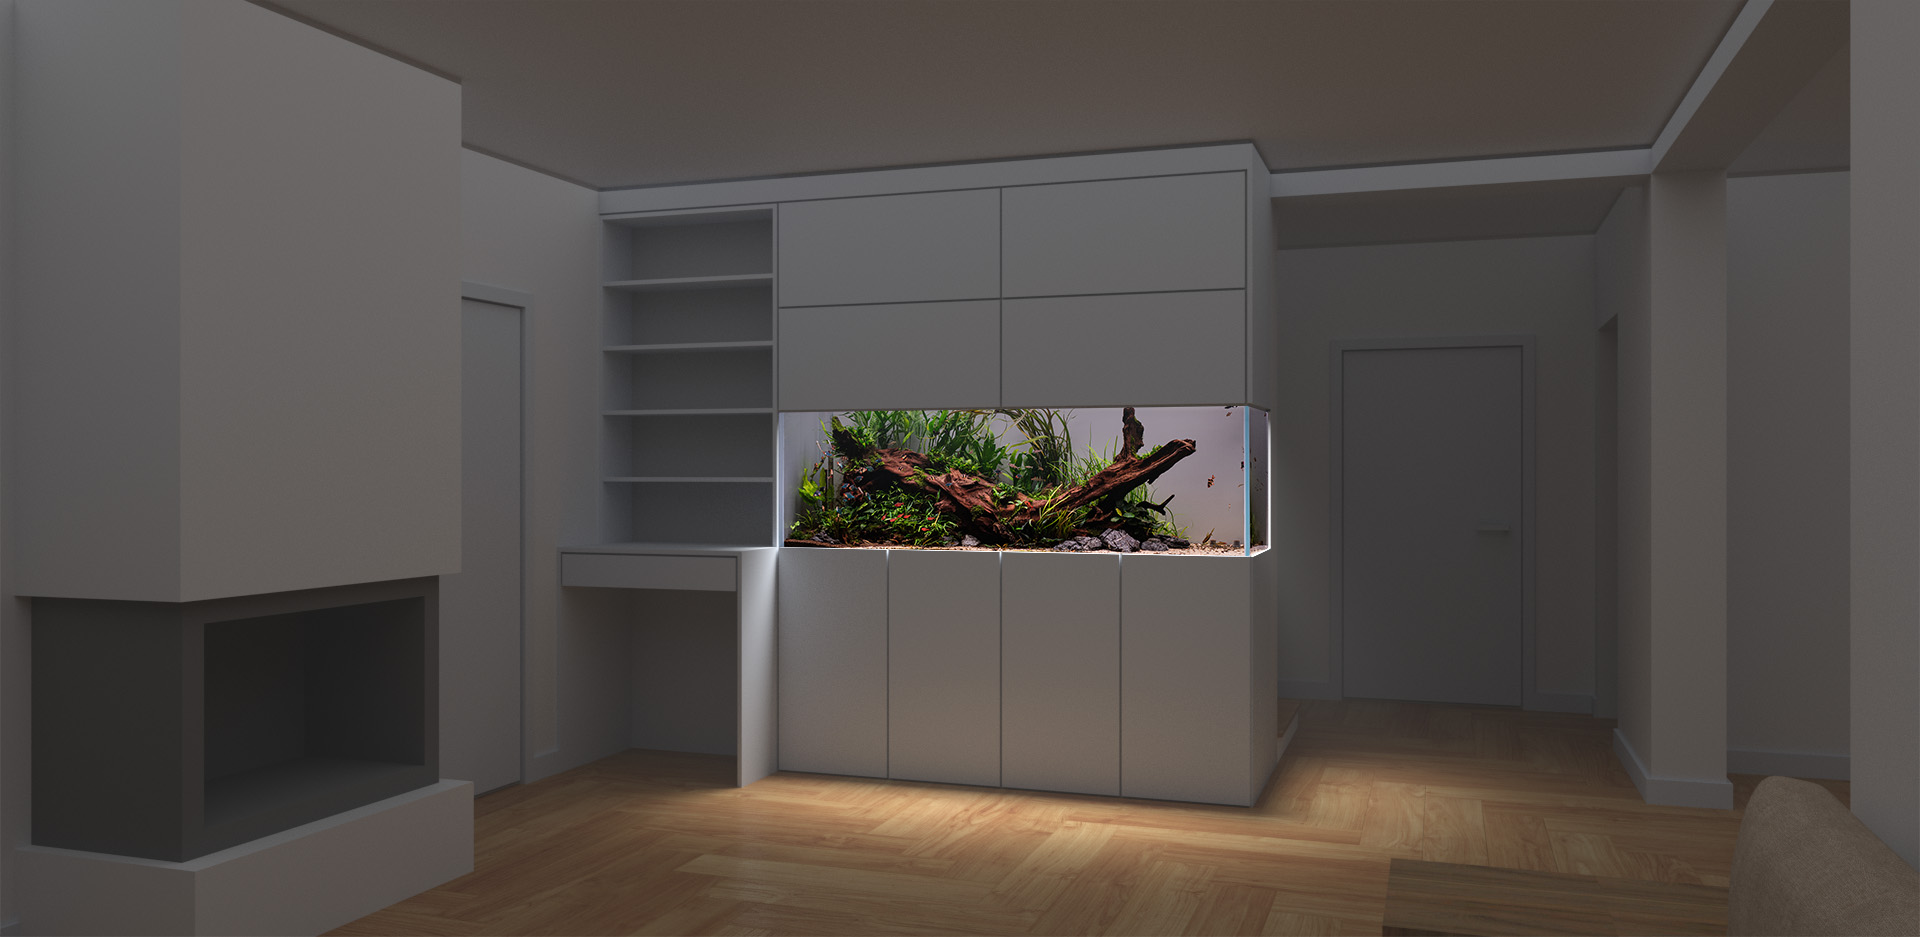 Nowoczesne akwarium roślinne pojemności 800l stanie się ozdobą każdego salonu.